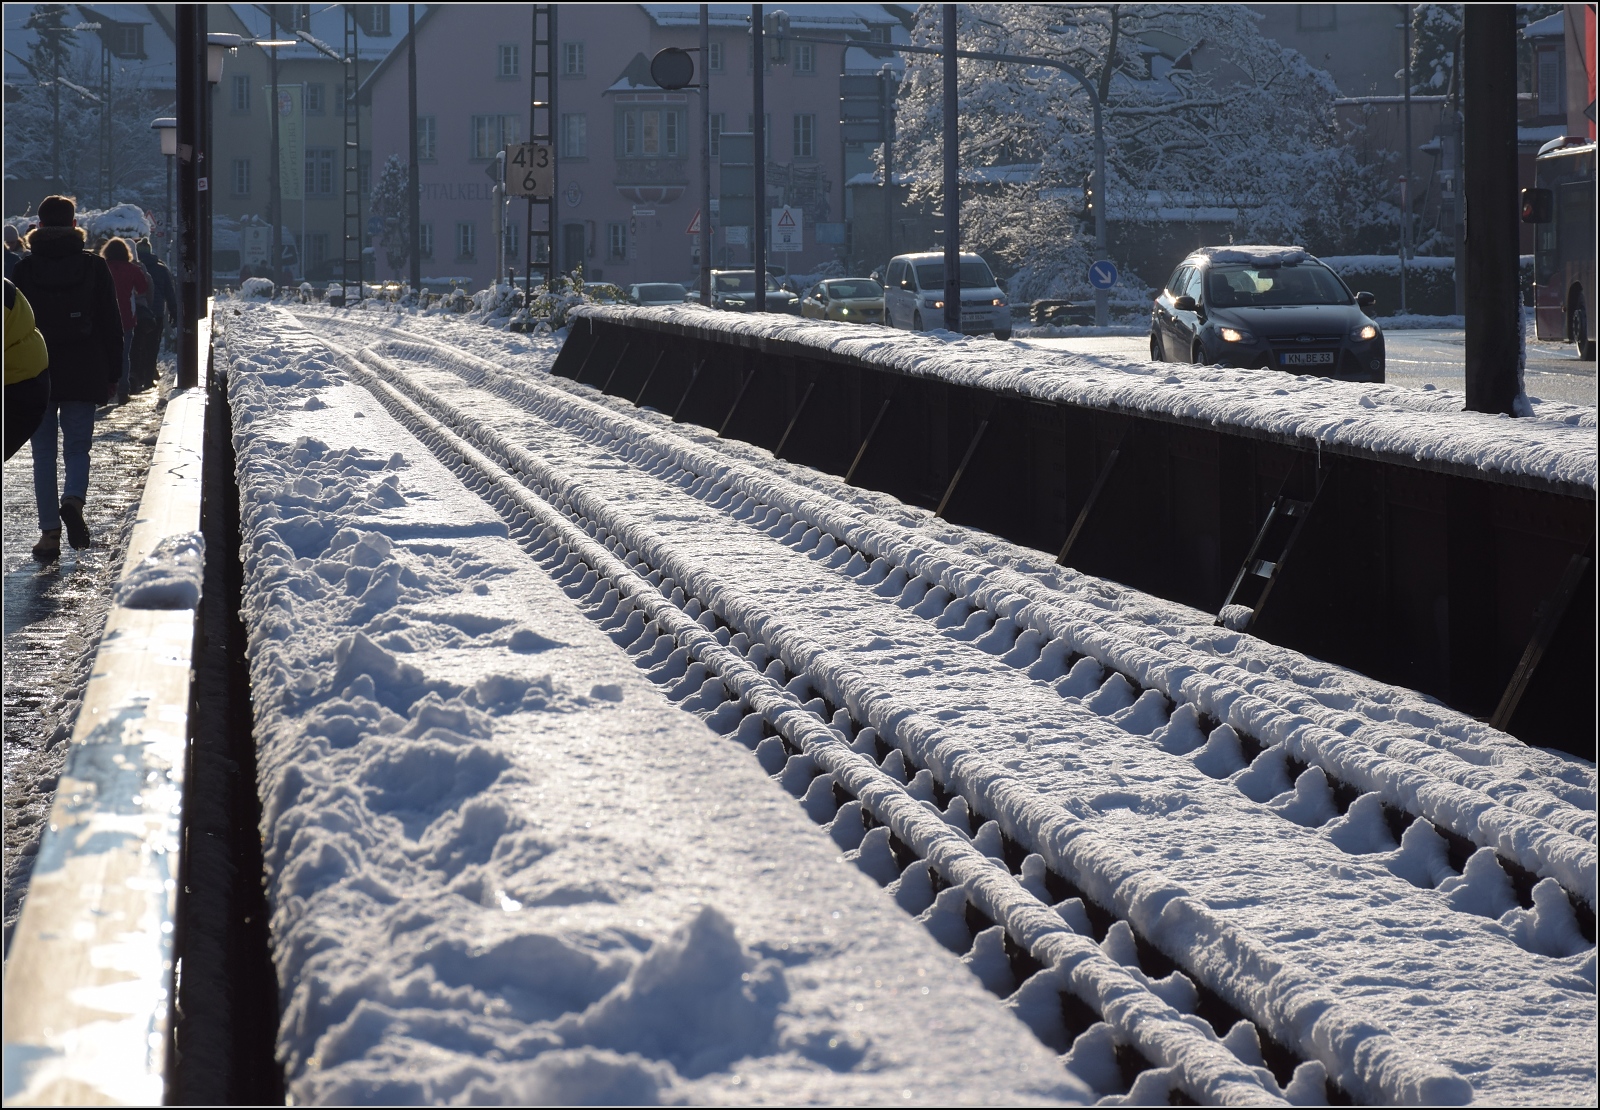 Winterzauber am Bodensee mit Nebenwirkungen.

Weisse Winterwunderwelt auf der Rheinbrcke in Konstanz im Dezember 2023. Sieht nicht nach einem Grund fr einen Betriebsunterbruch aus, jedenfalls trmt sich hier kein Schnee auf. De facto ist die Strecke aber ein Problembr, aus welchen Grnden auch immer.